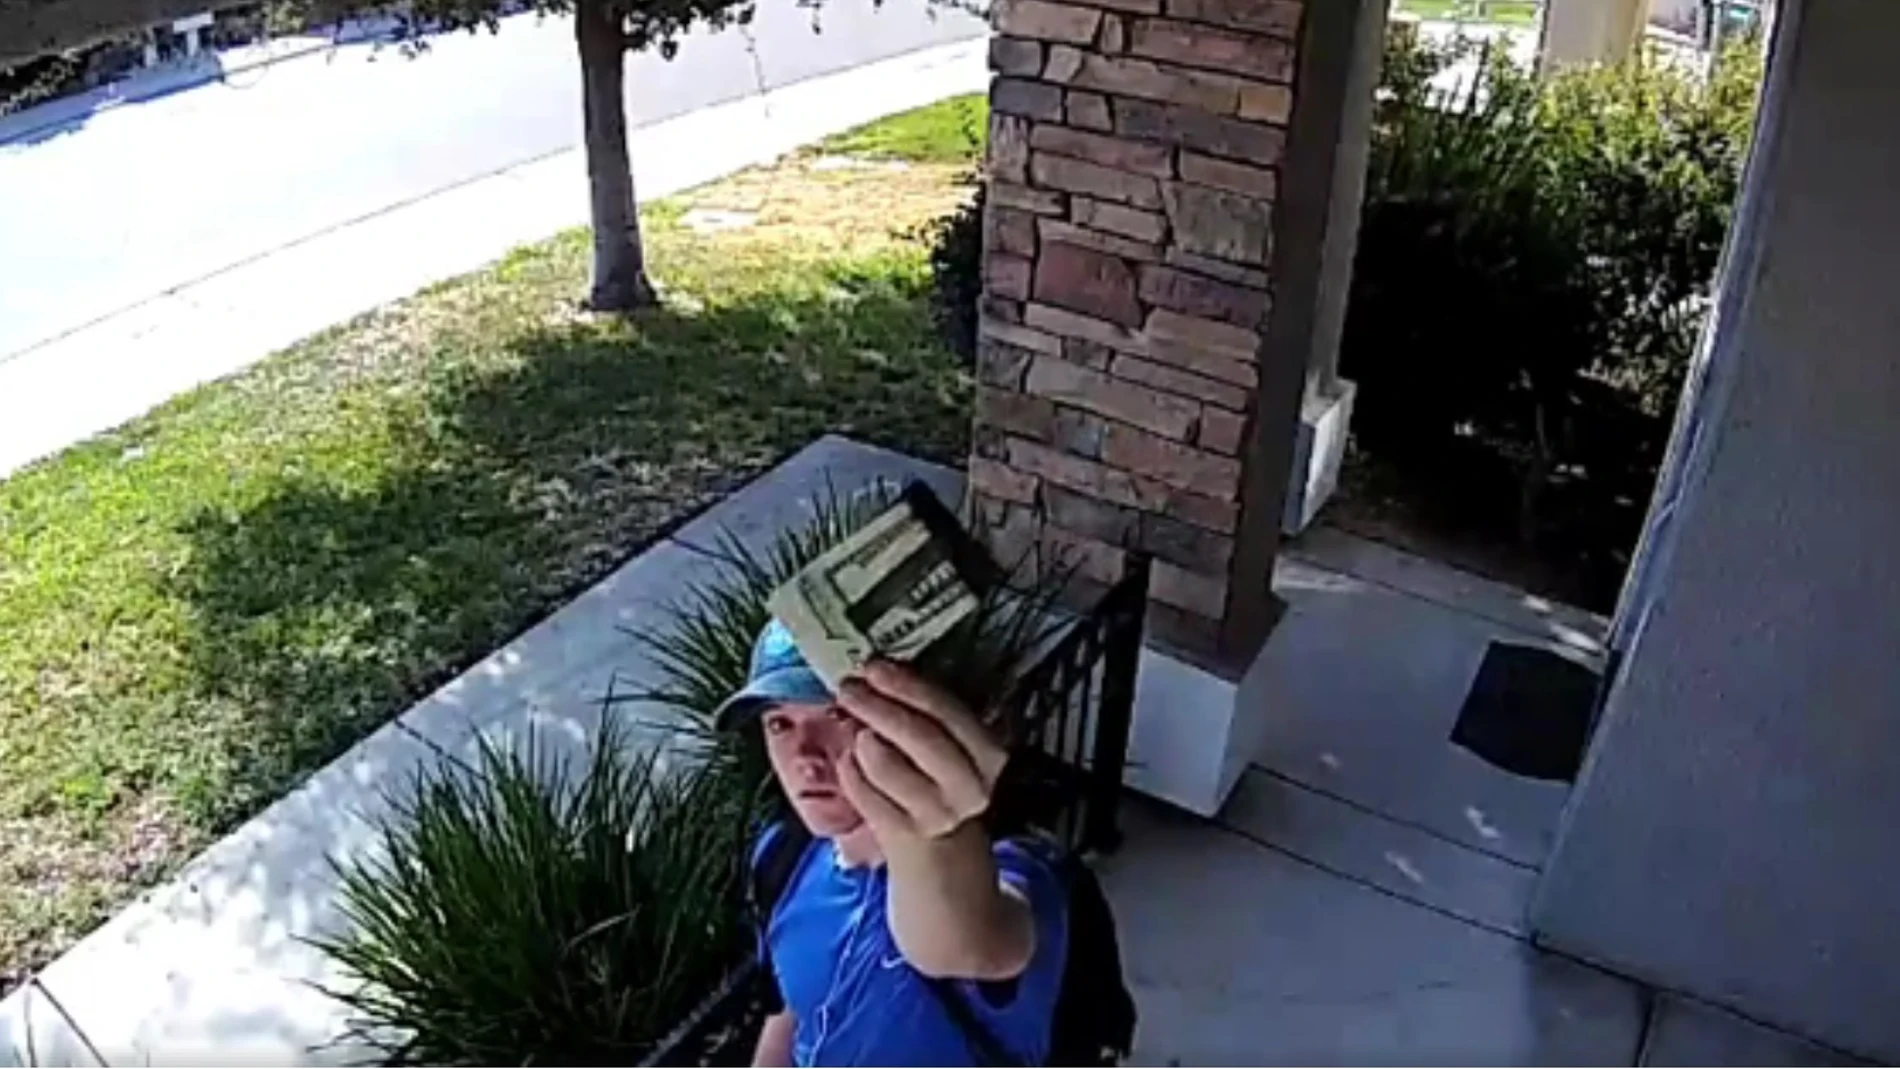 El joven muestra a la cámara de seguridad la cartera encontrada